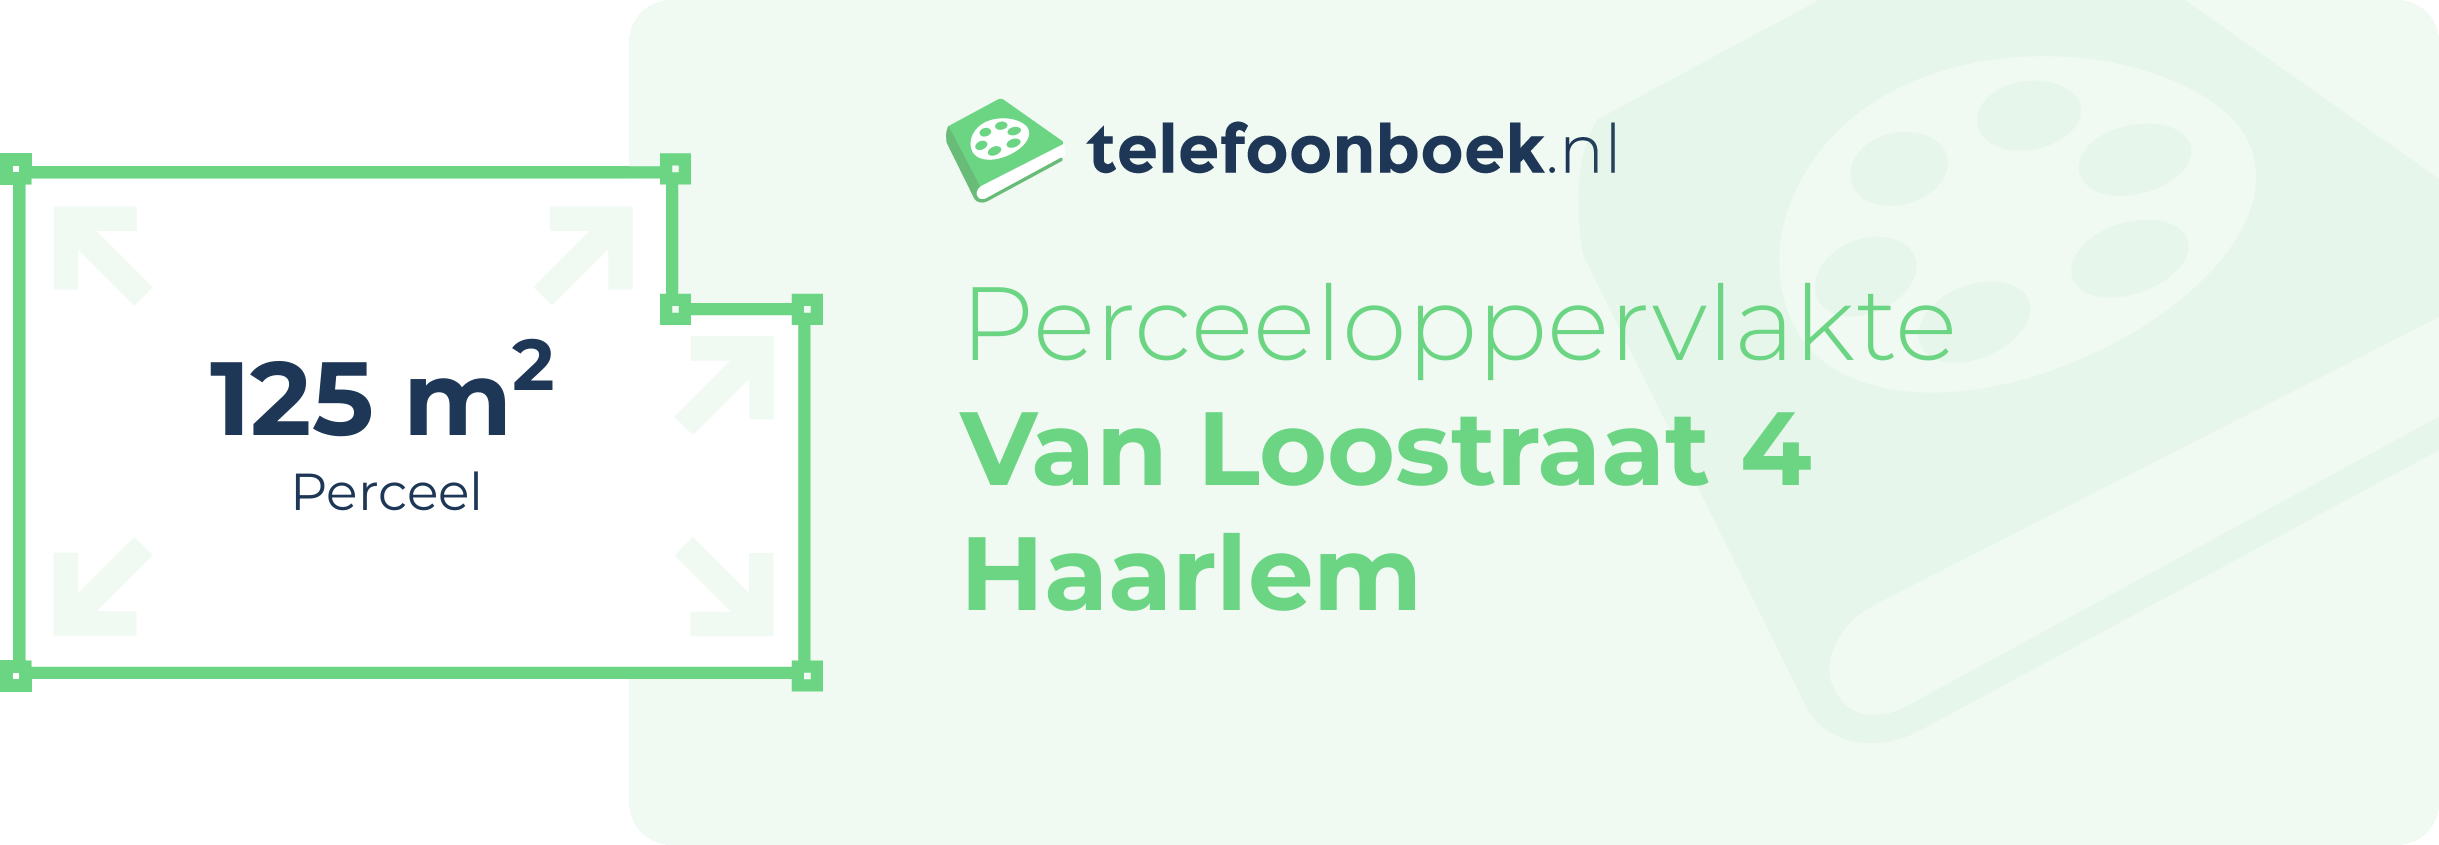 Perceeloppervlakte Van Loostraat 4 Haarlem